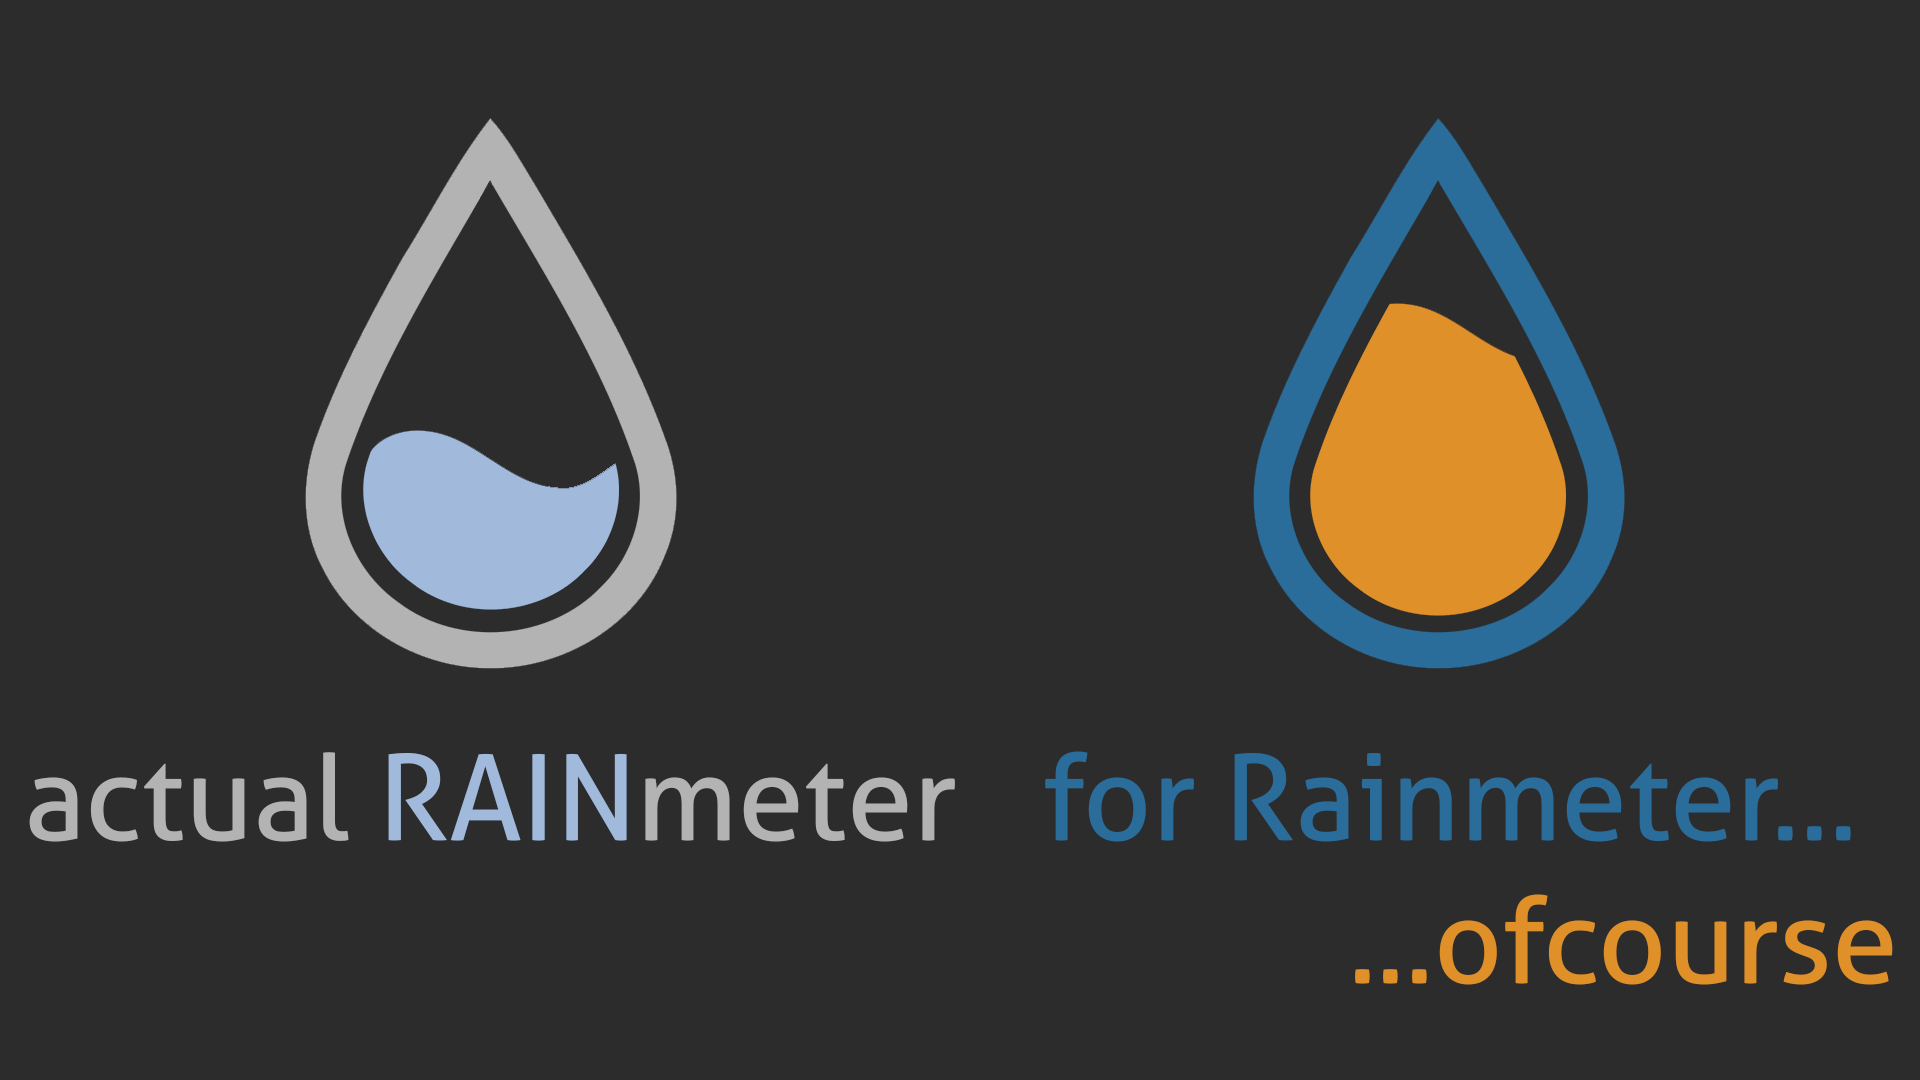 Actual Rainmeter